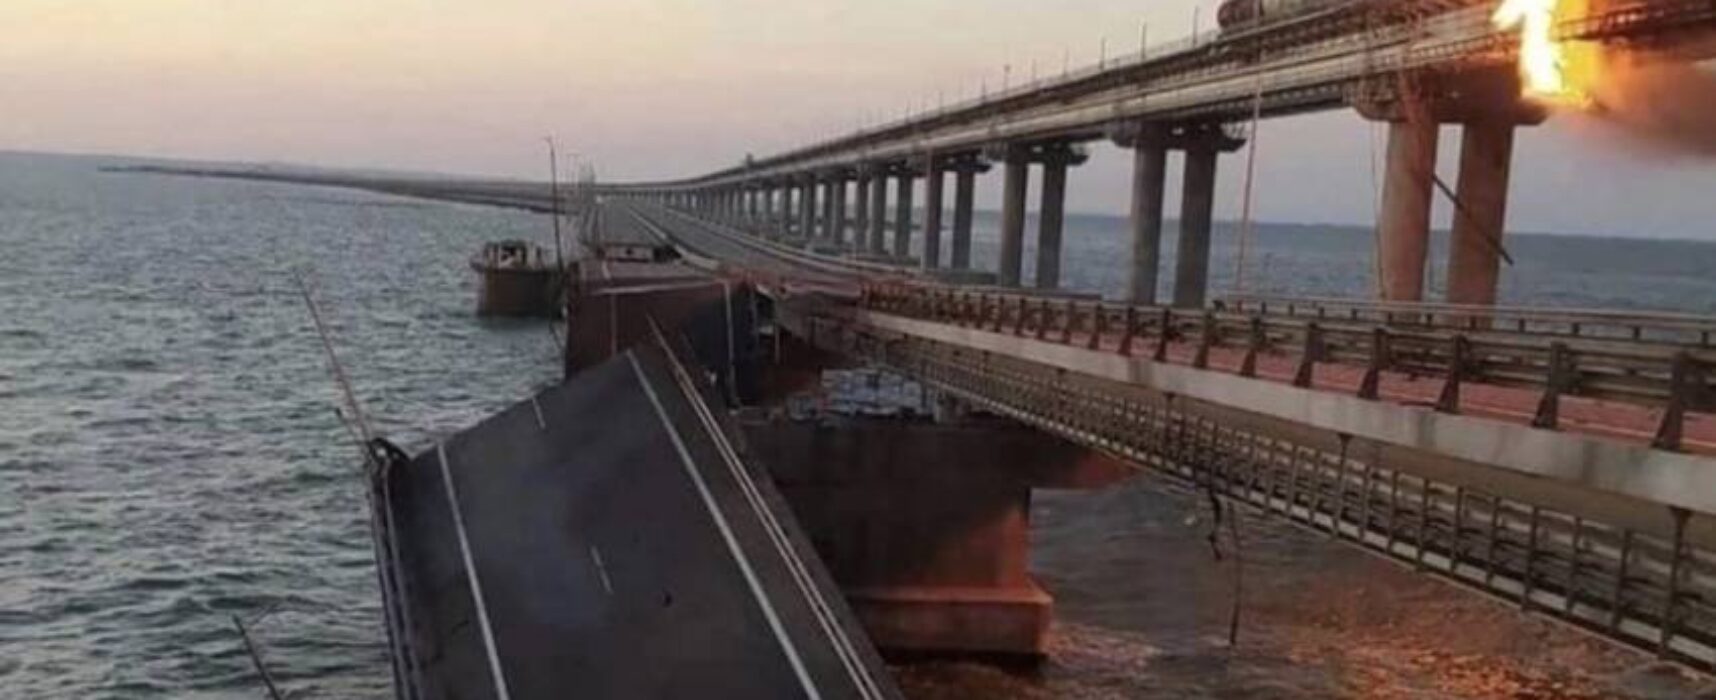 Explosões destroem parte da única ponte que liga Rússia à região da Crimeia